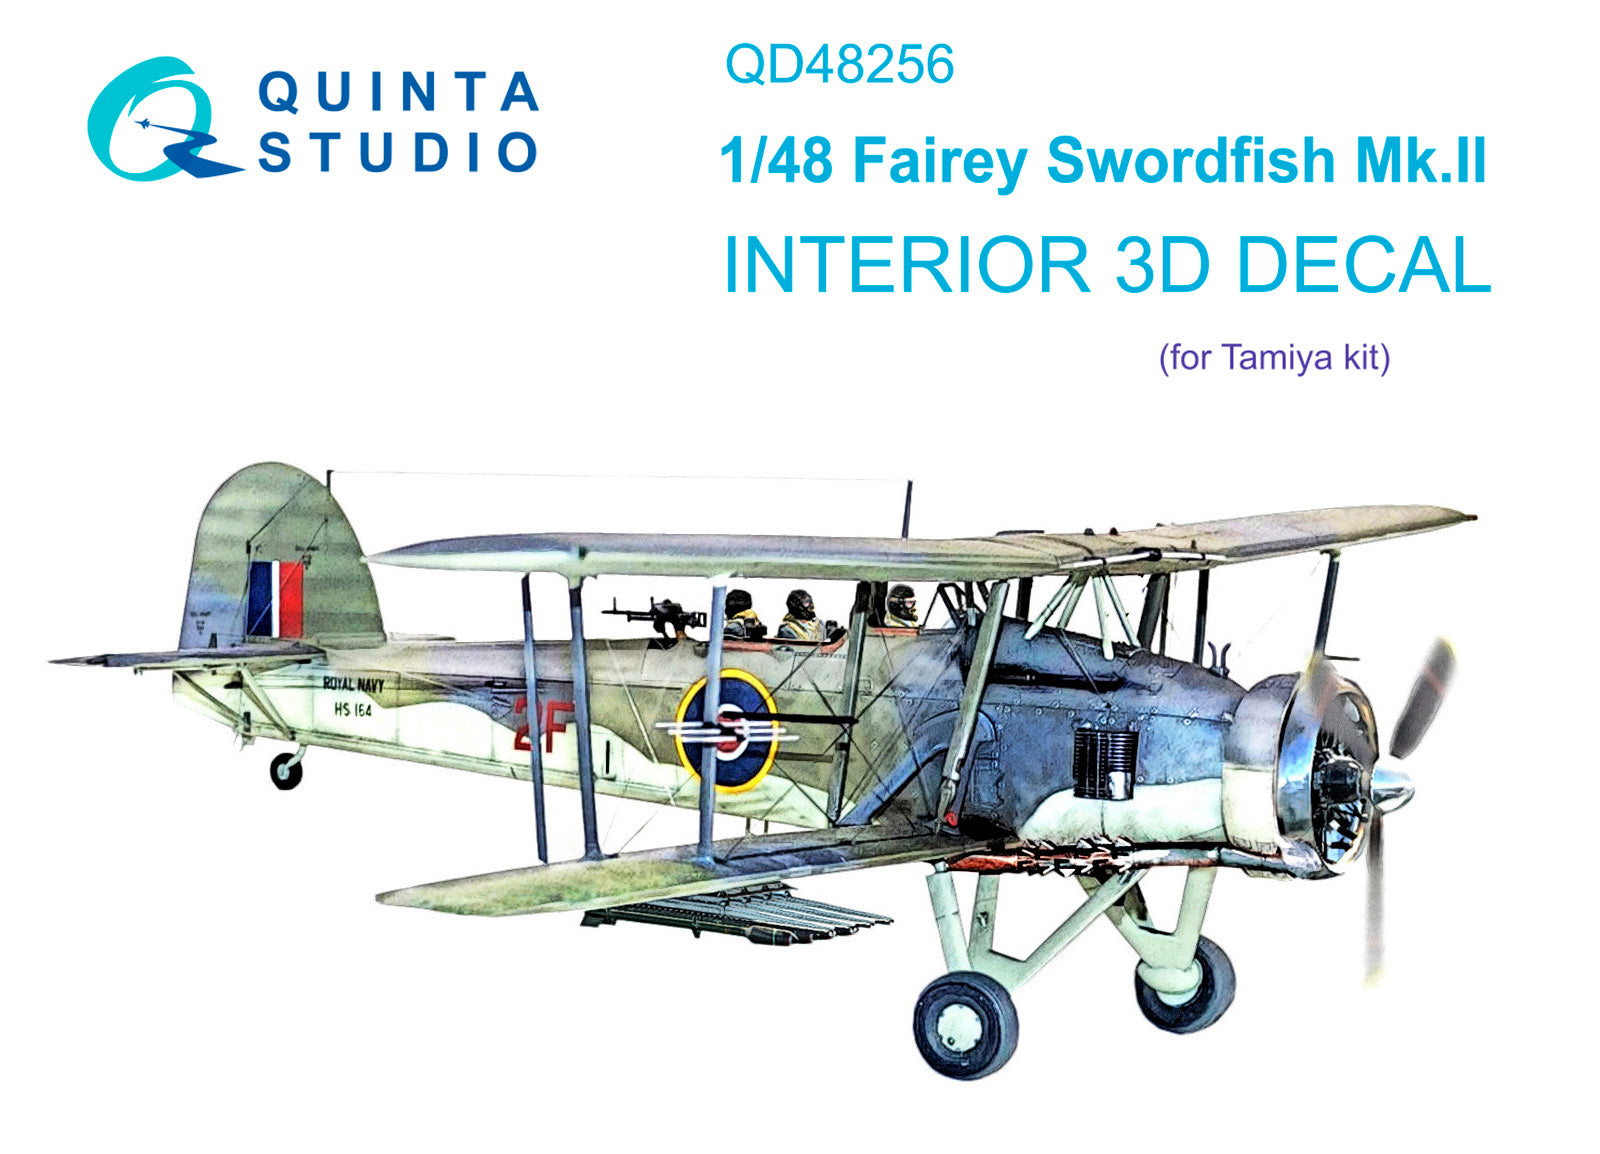 Quinta Studio - 1/48 Swordfish Mk.ll QD48256 for Tamiya kit